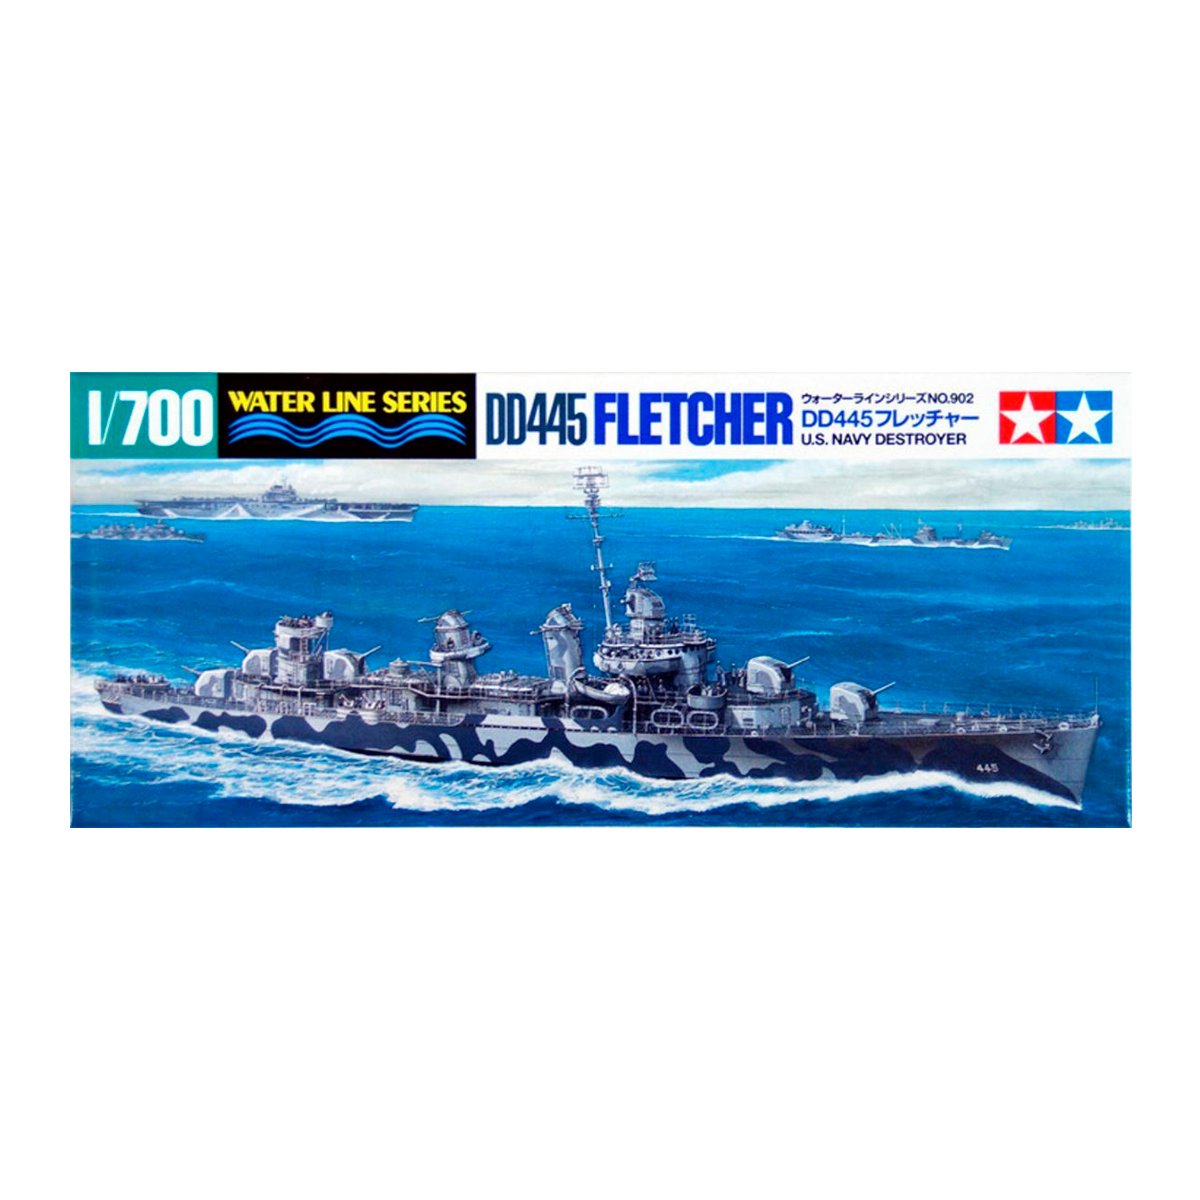 1/700 U.S.Navy DD445 Fletcher